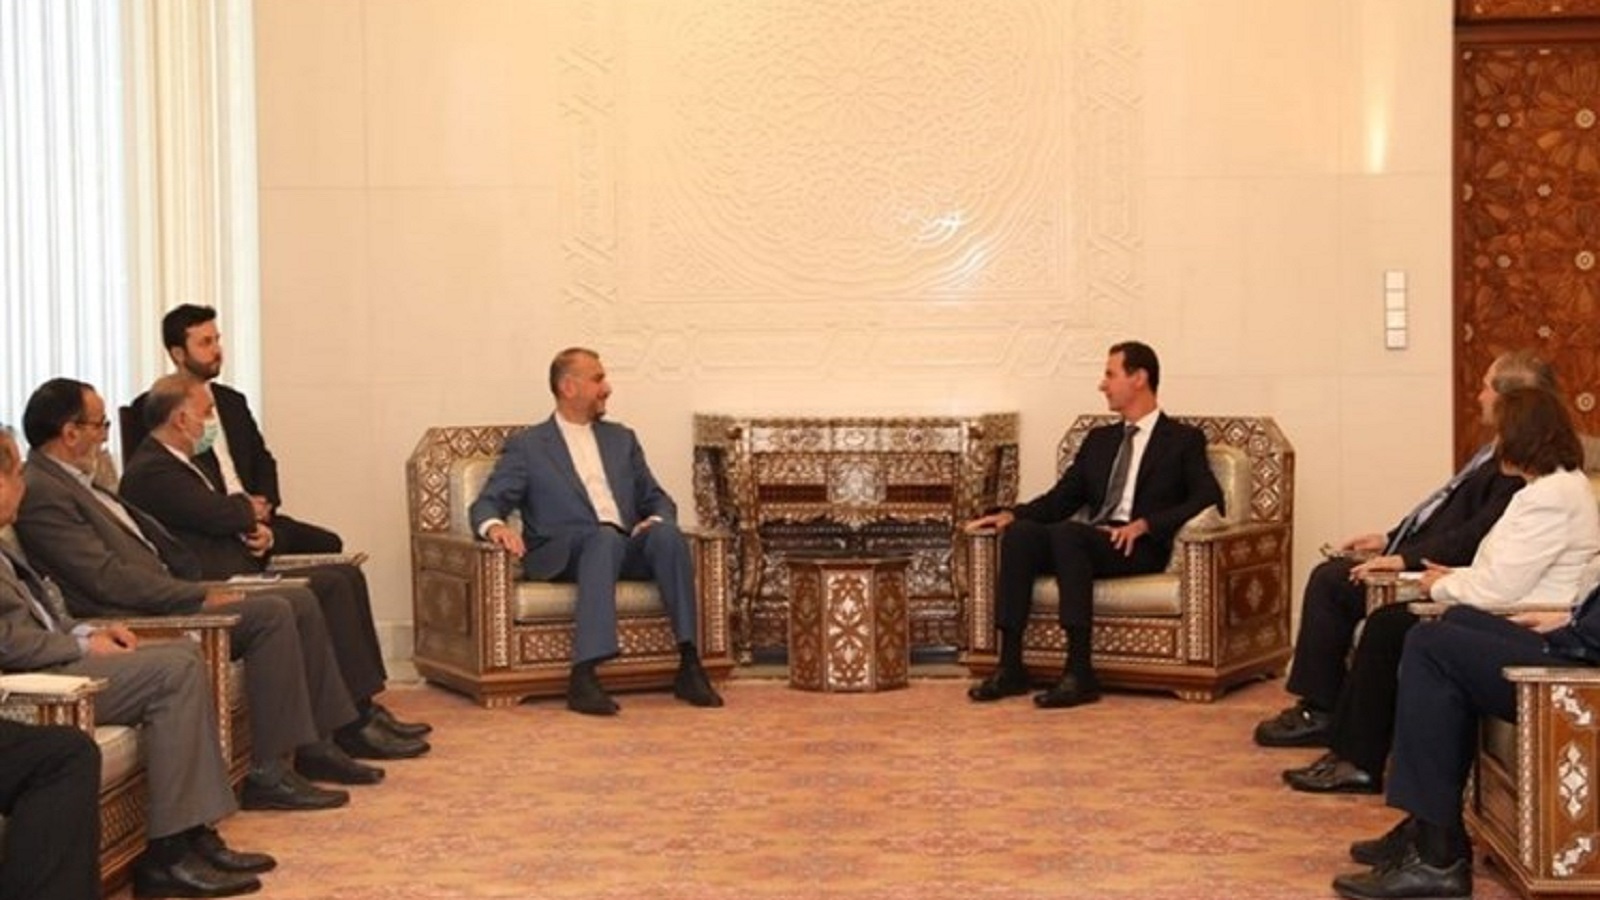 عبد اللهيان يعارض العملية التركية:الأسد يدعم الحوار مع تركيا